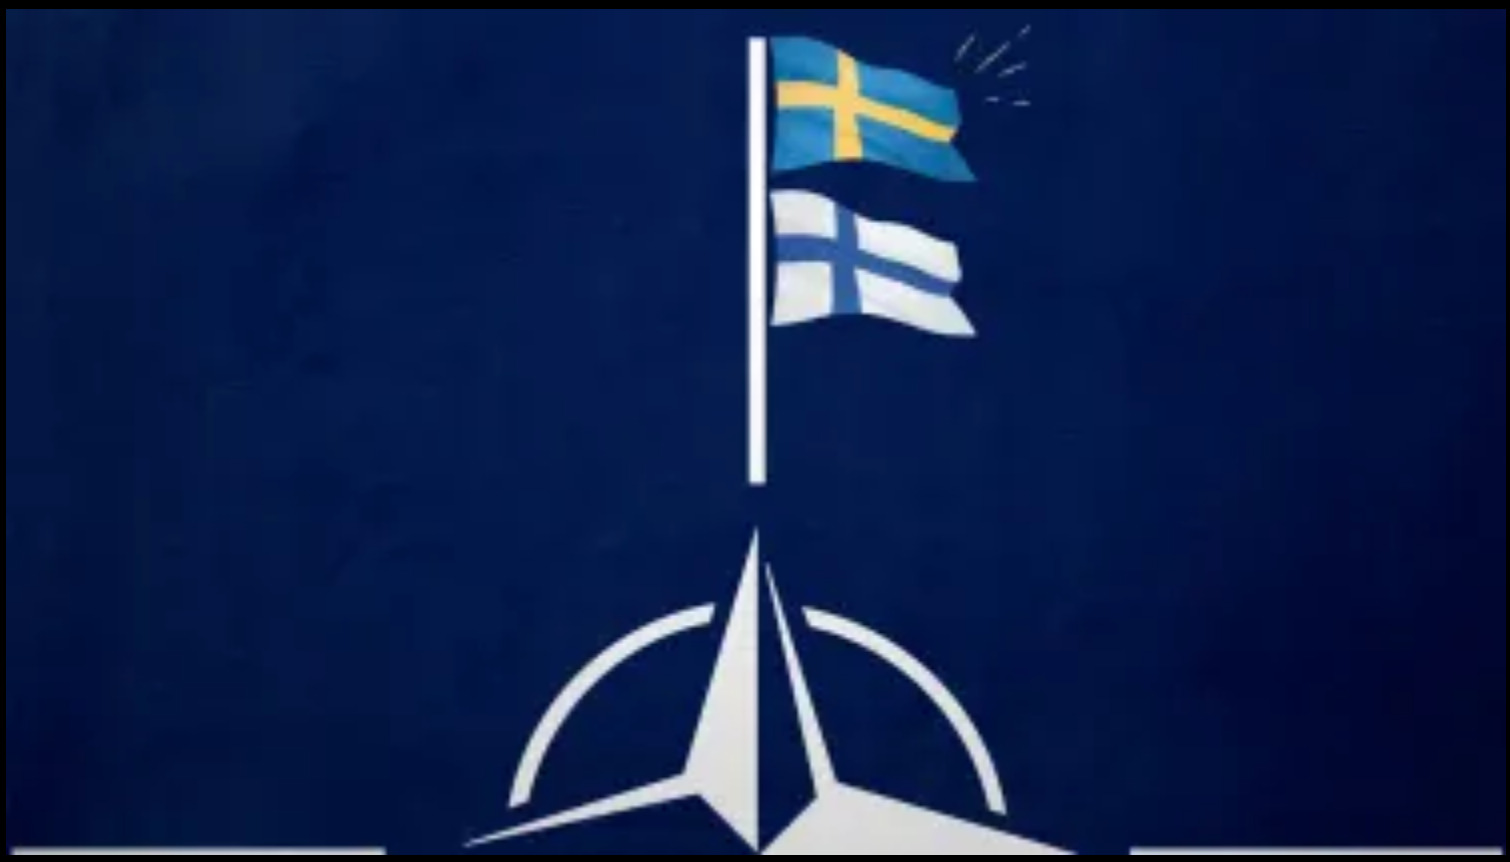 Ιταλός Υπουργός: «Όλες οι χώρες του ΝΑΤΟ, συμπεριλαμβανομένης της Τουρκίας, συμφωνούν να δεχθούν τη Φινλανδία και τη Σουηδία στη Συμμαχία»